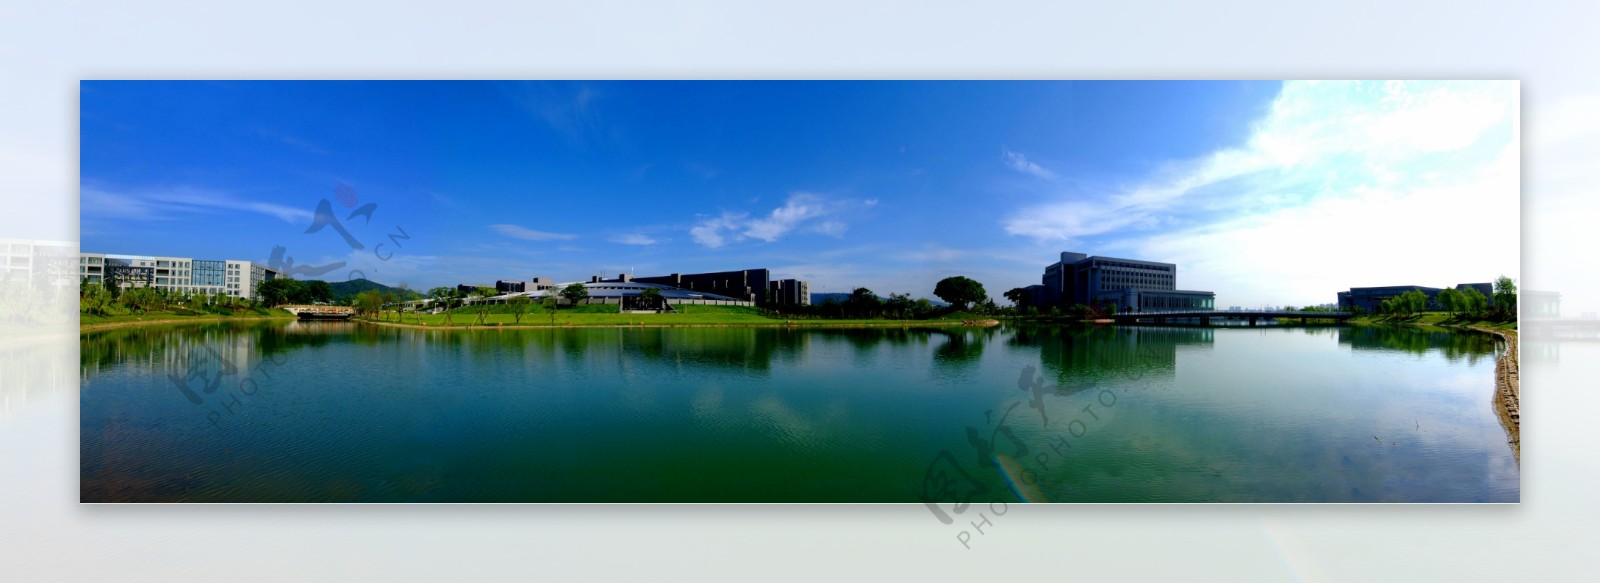 中南大学新校区全景图图片